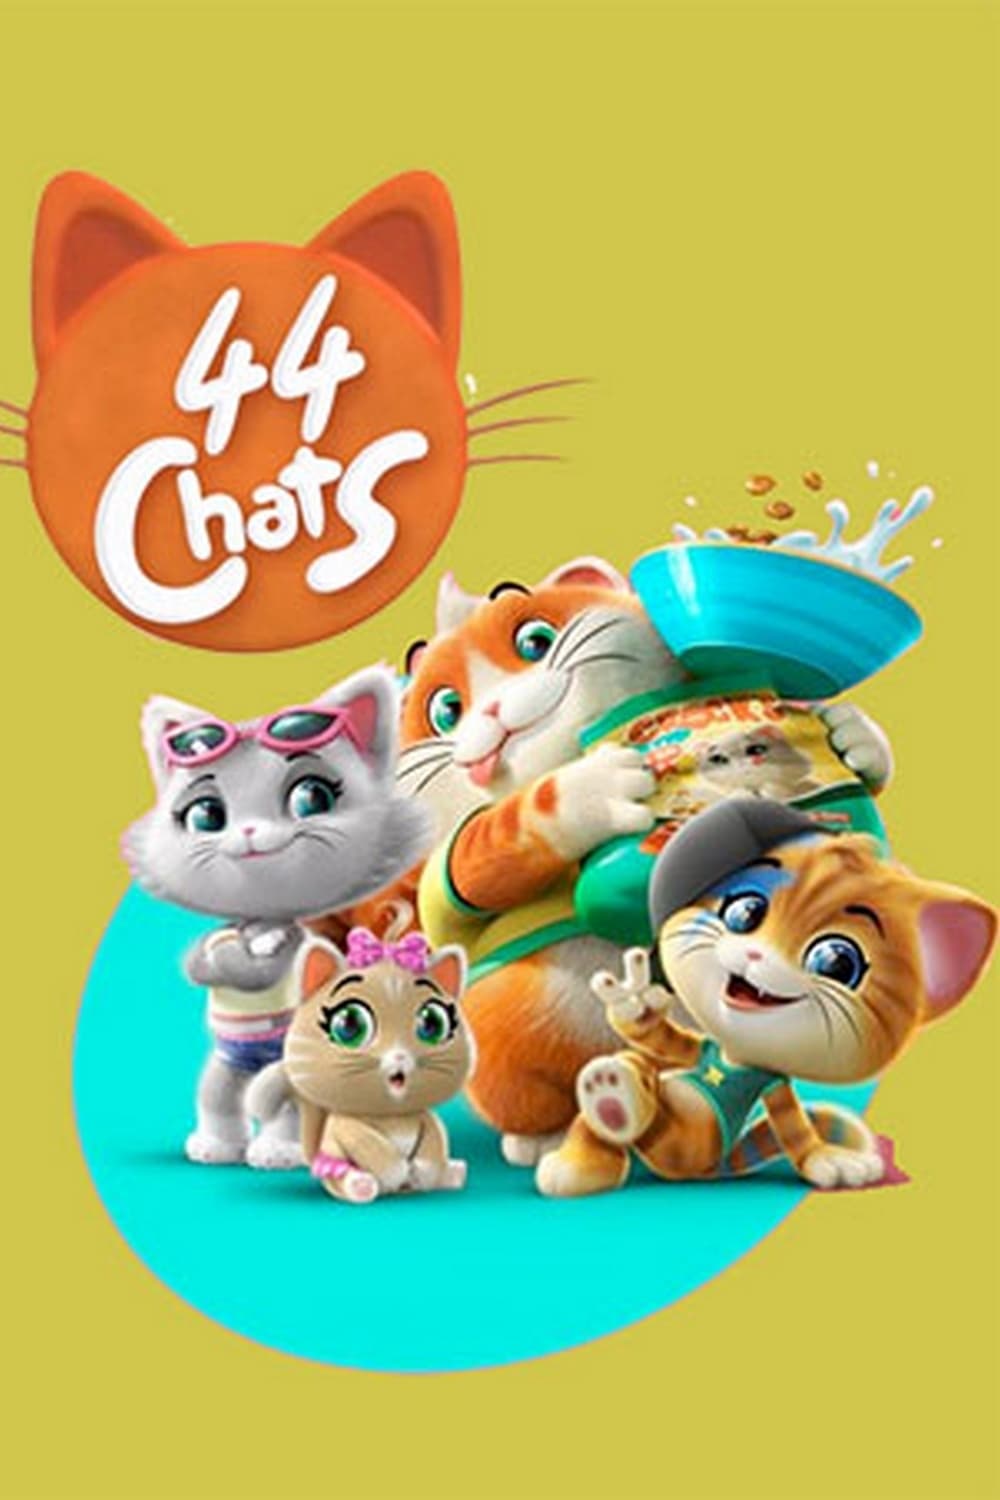 Affiche de la série 44 chats poster